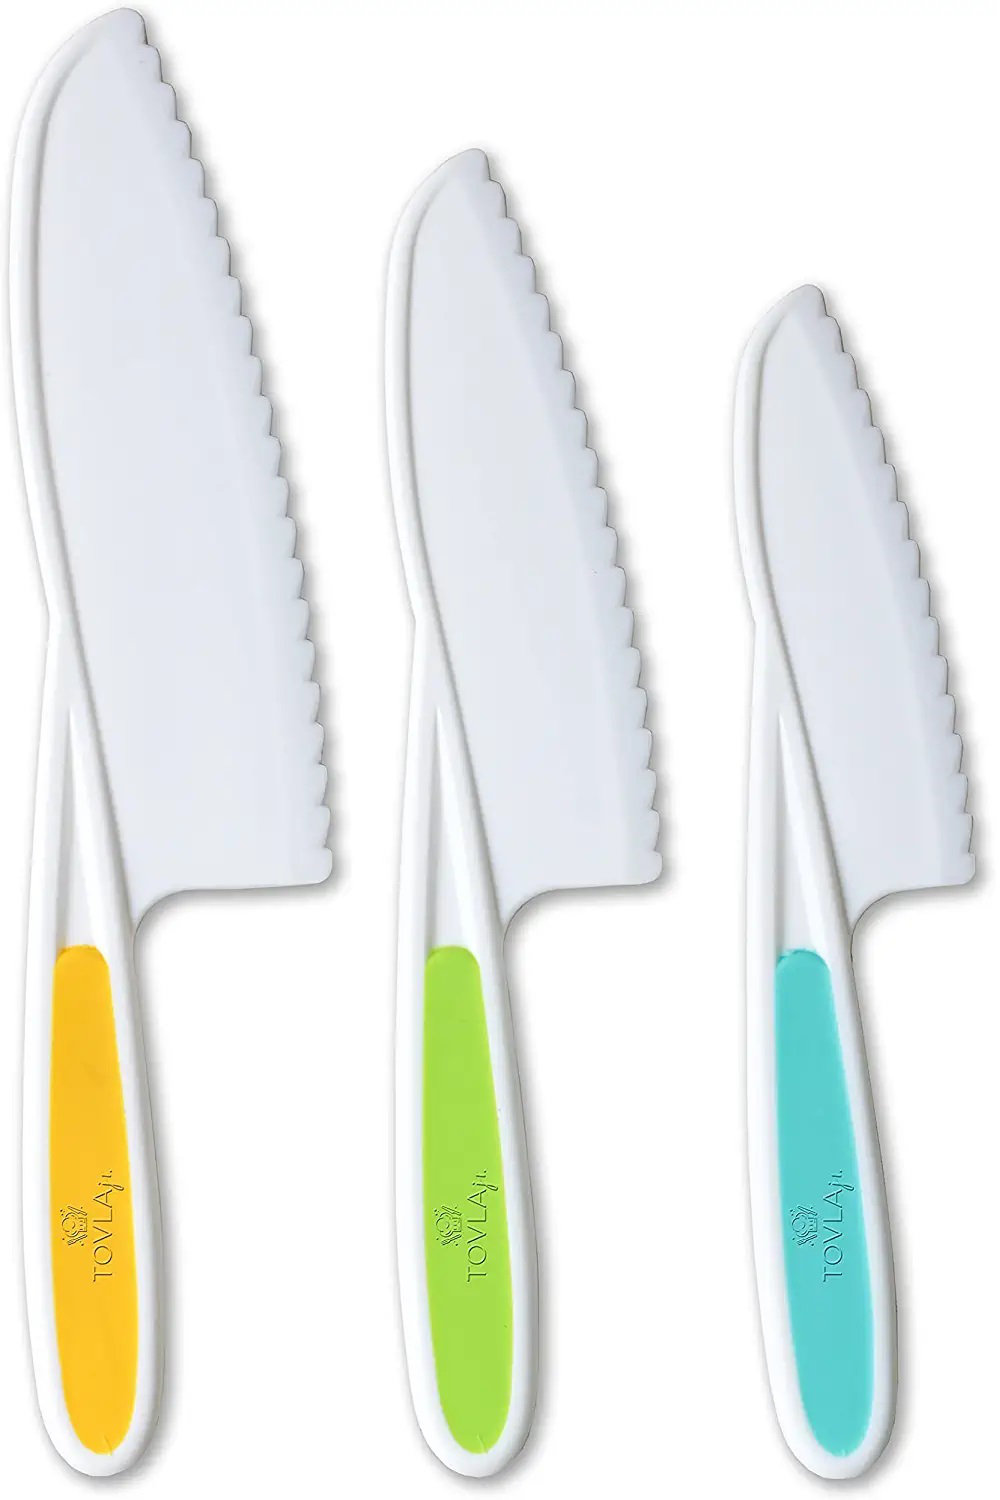 Tovla Jr. Cooking Knives For Kids